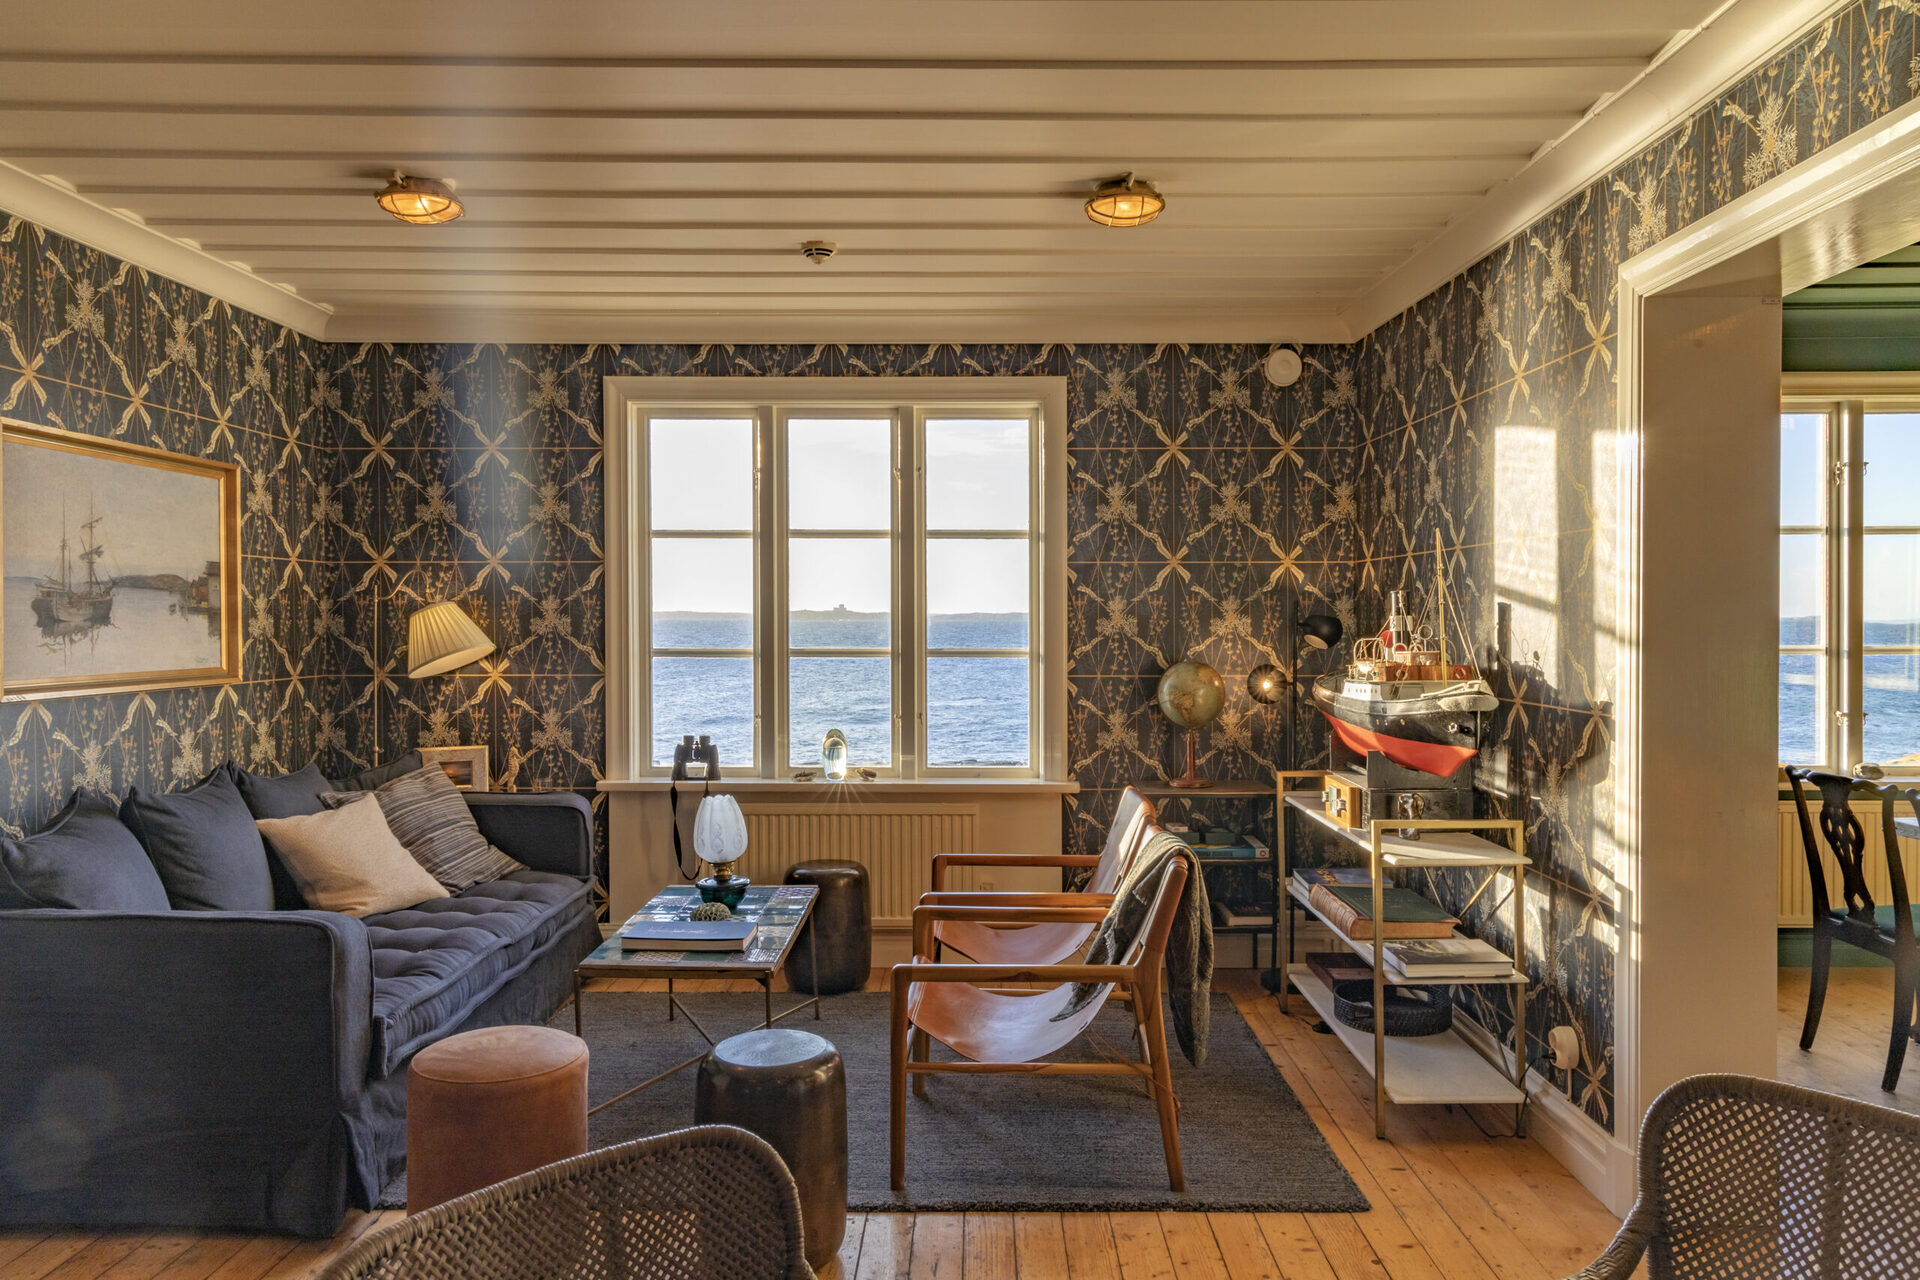 De inspiração marinha, os interiores apresentam paredes e tetos com painéis de madeira e móveis rústicos